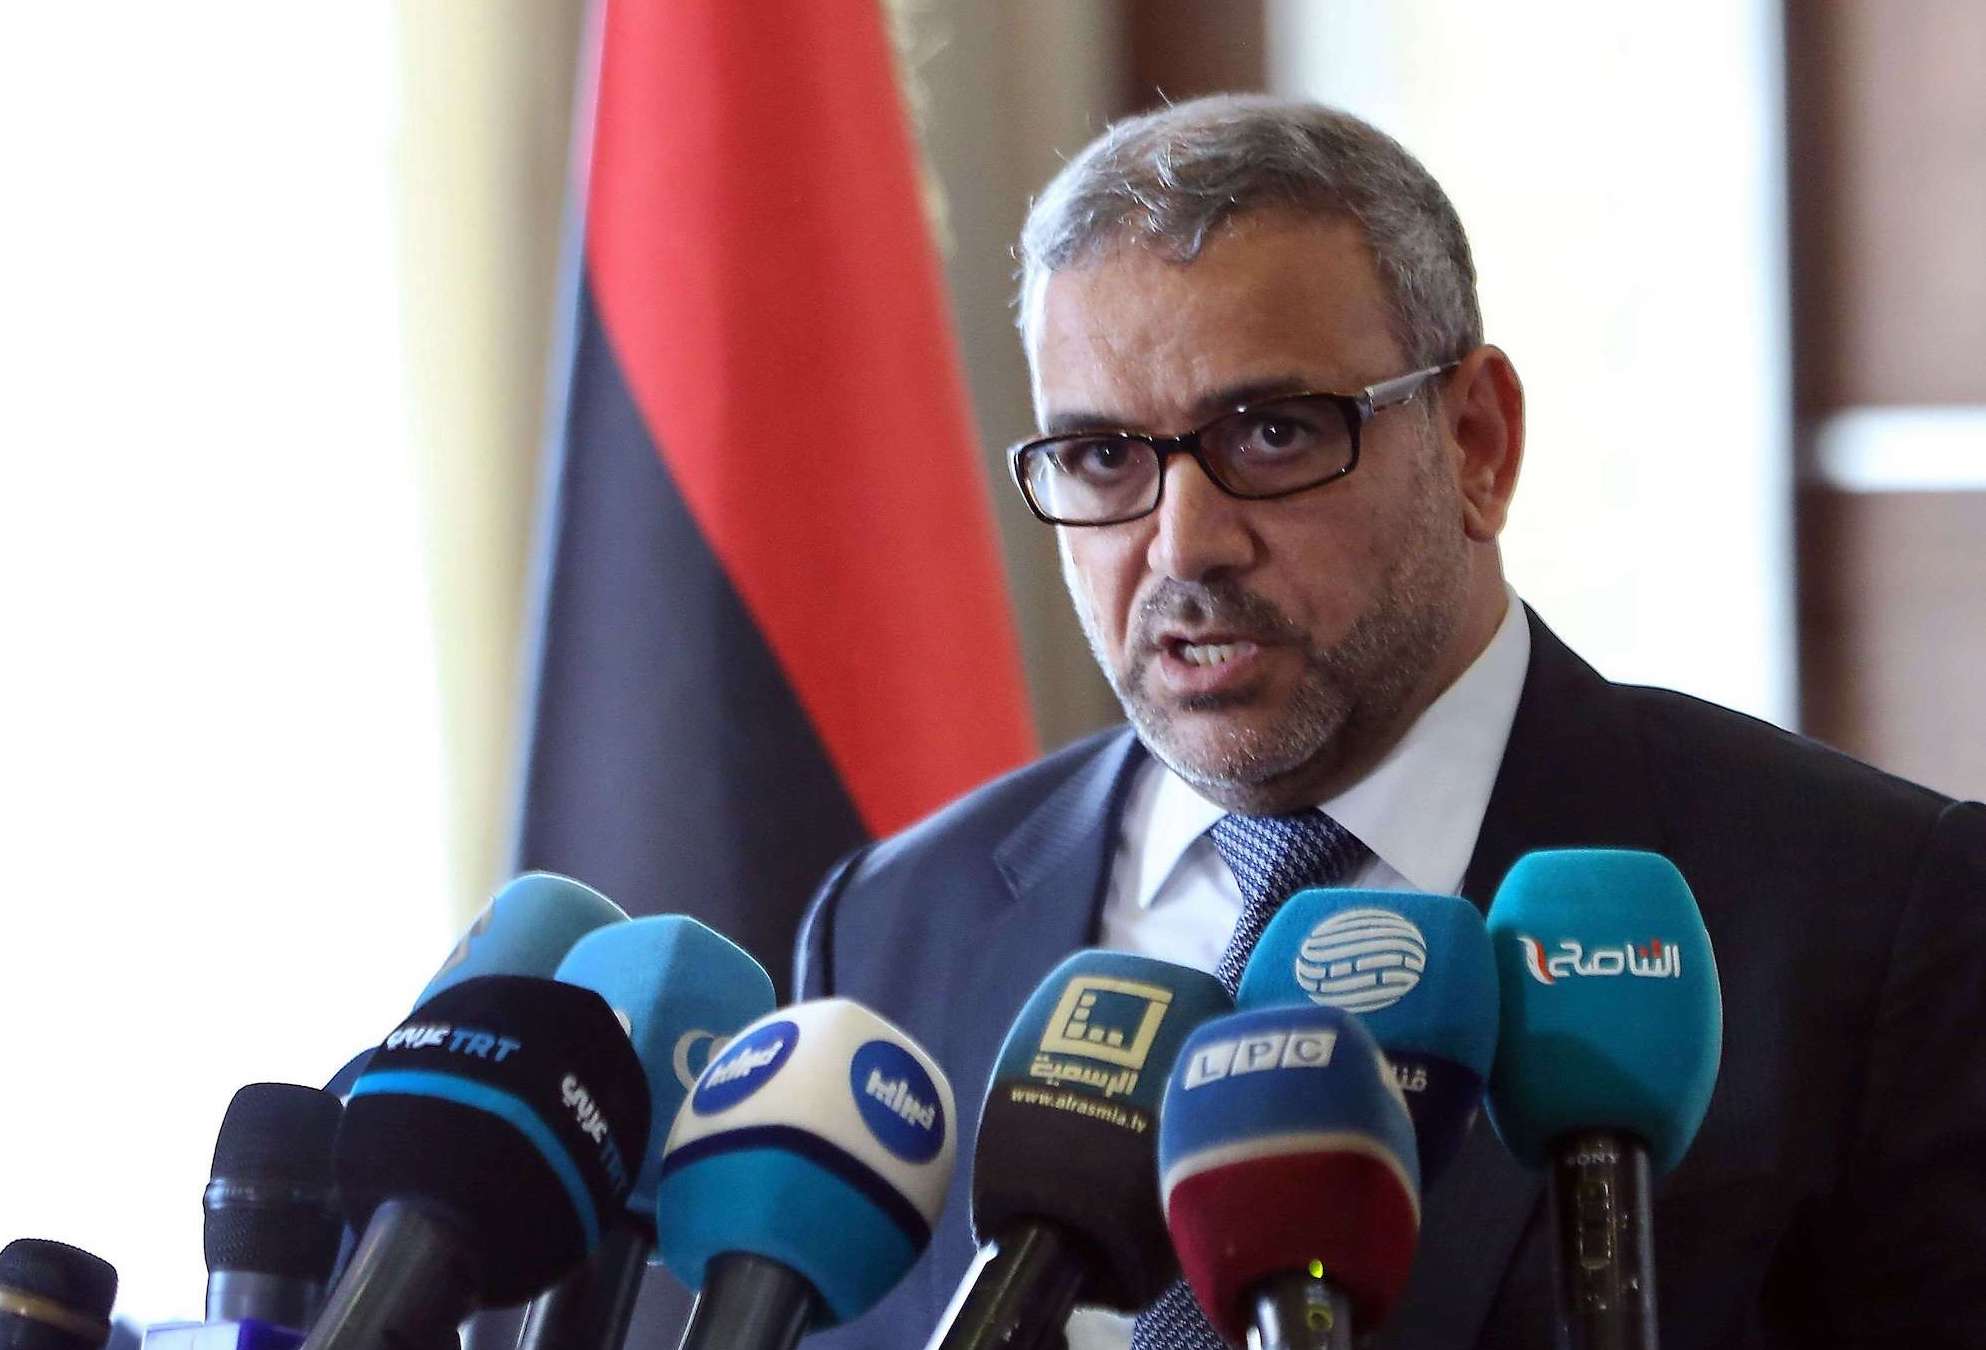 ليبيا.. المشري يتهم رئيس مفوضية الانتخابات بـ”التدليس”